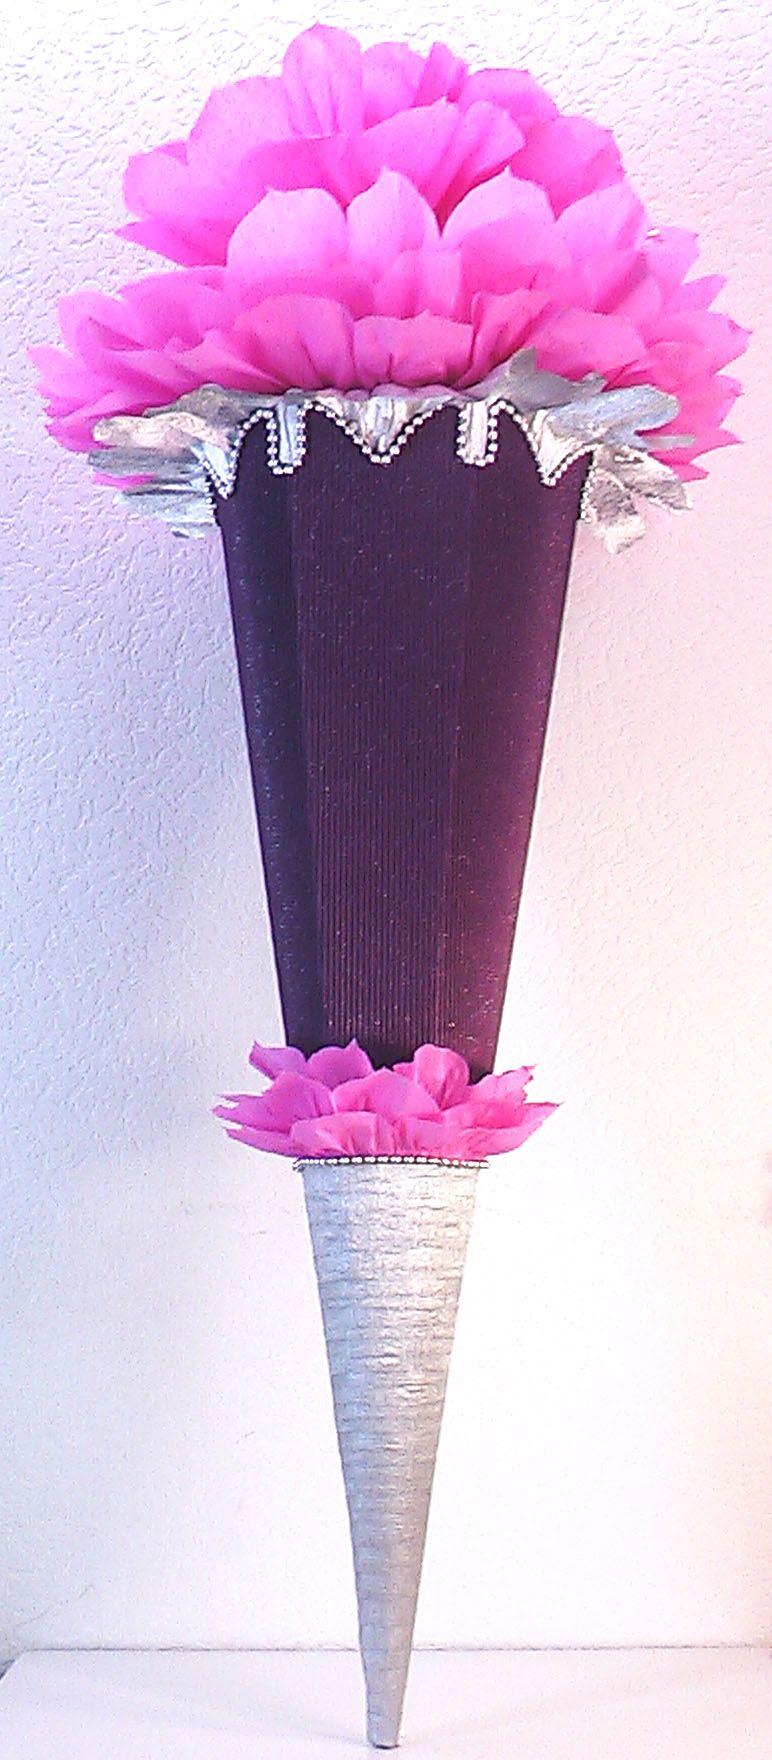  - Schultüte Zuckertüte Rohling zum selbst verzieren Rohling 70 75 80 85 90 100 cm / 1m für Mädchen HANDARBEIT violett pink silber